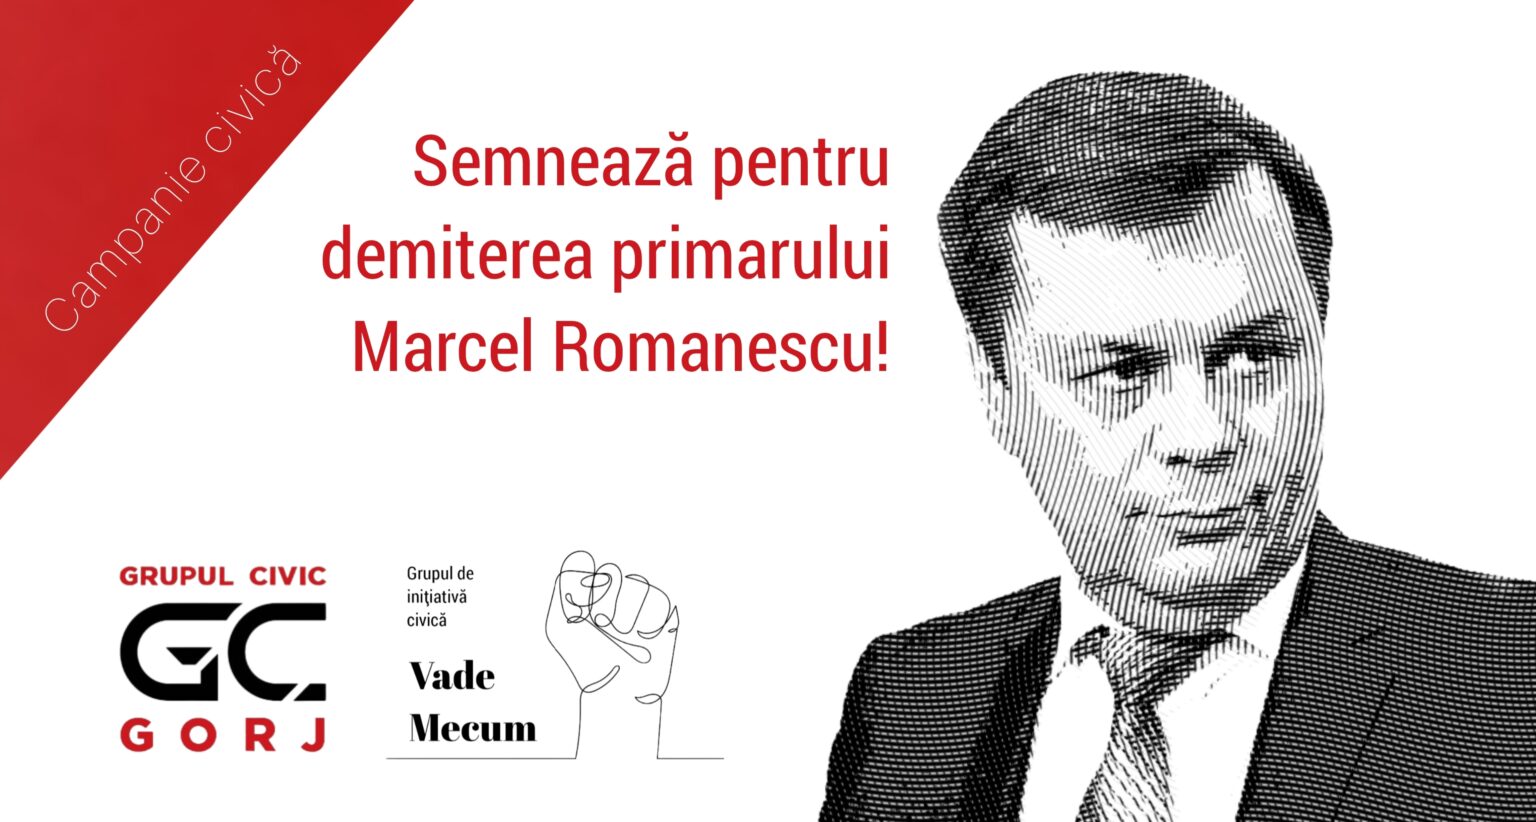 Grupurile civice din Târgu Jiu adună semnături pentru demiterea primarului Marcel Romanescu